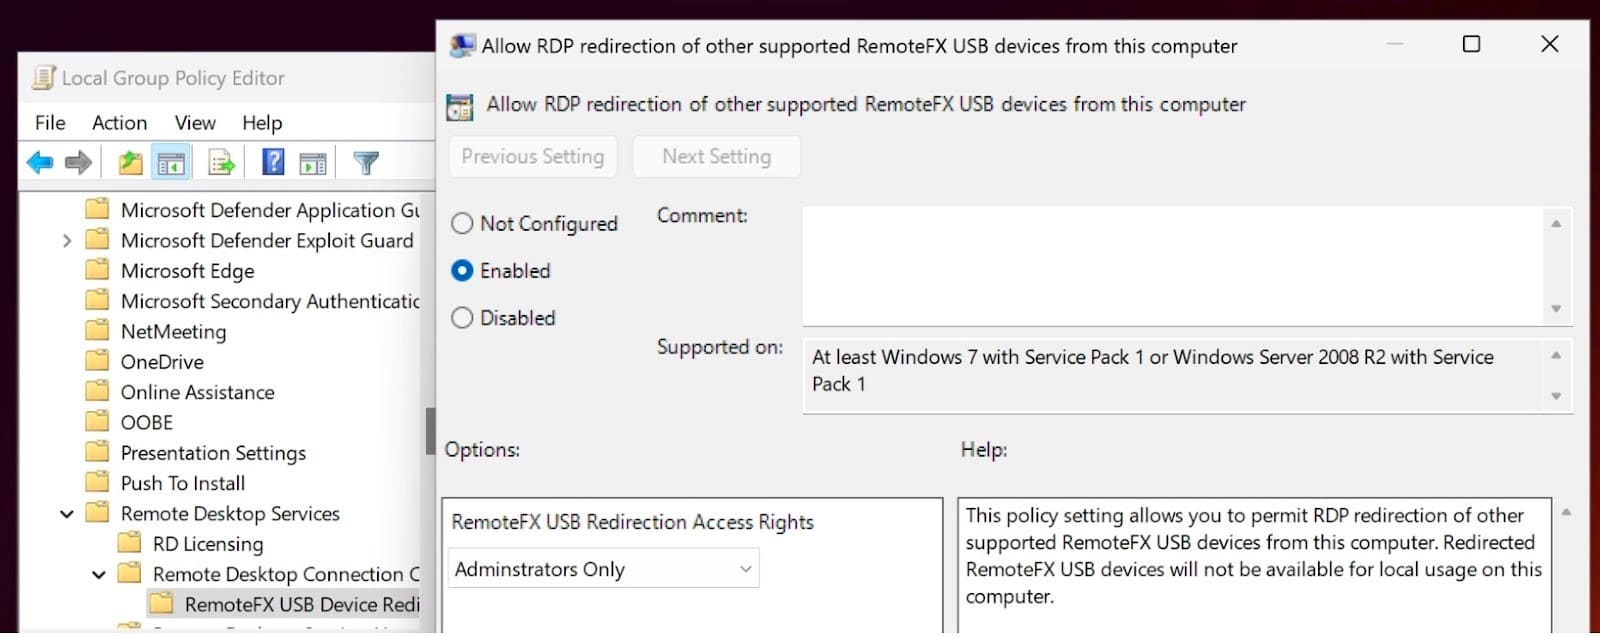  I sistemi USB RemoteFX sono abilitati